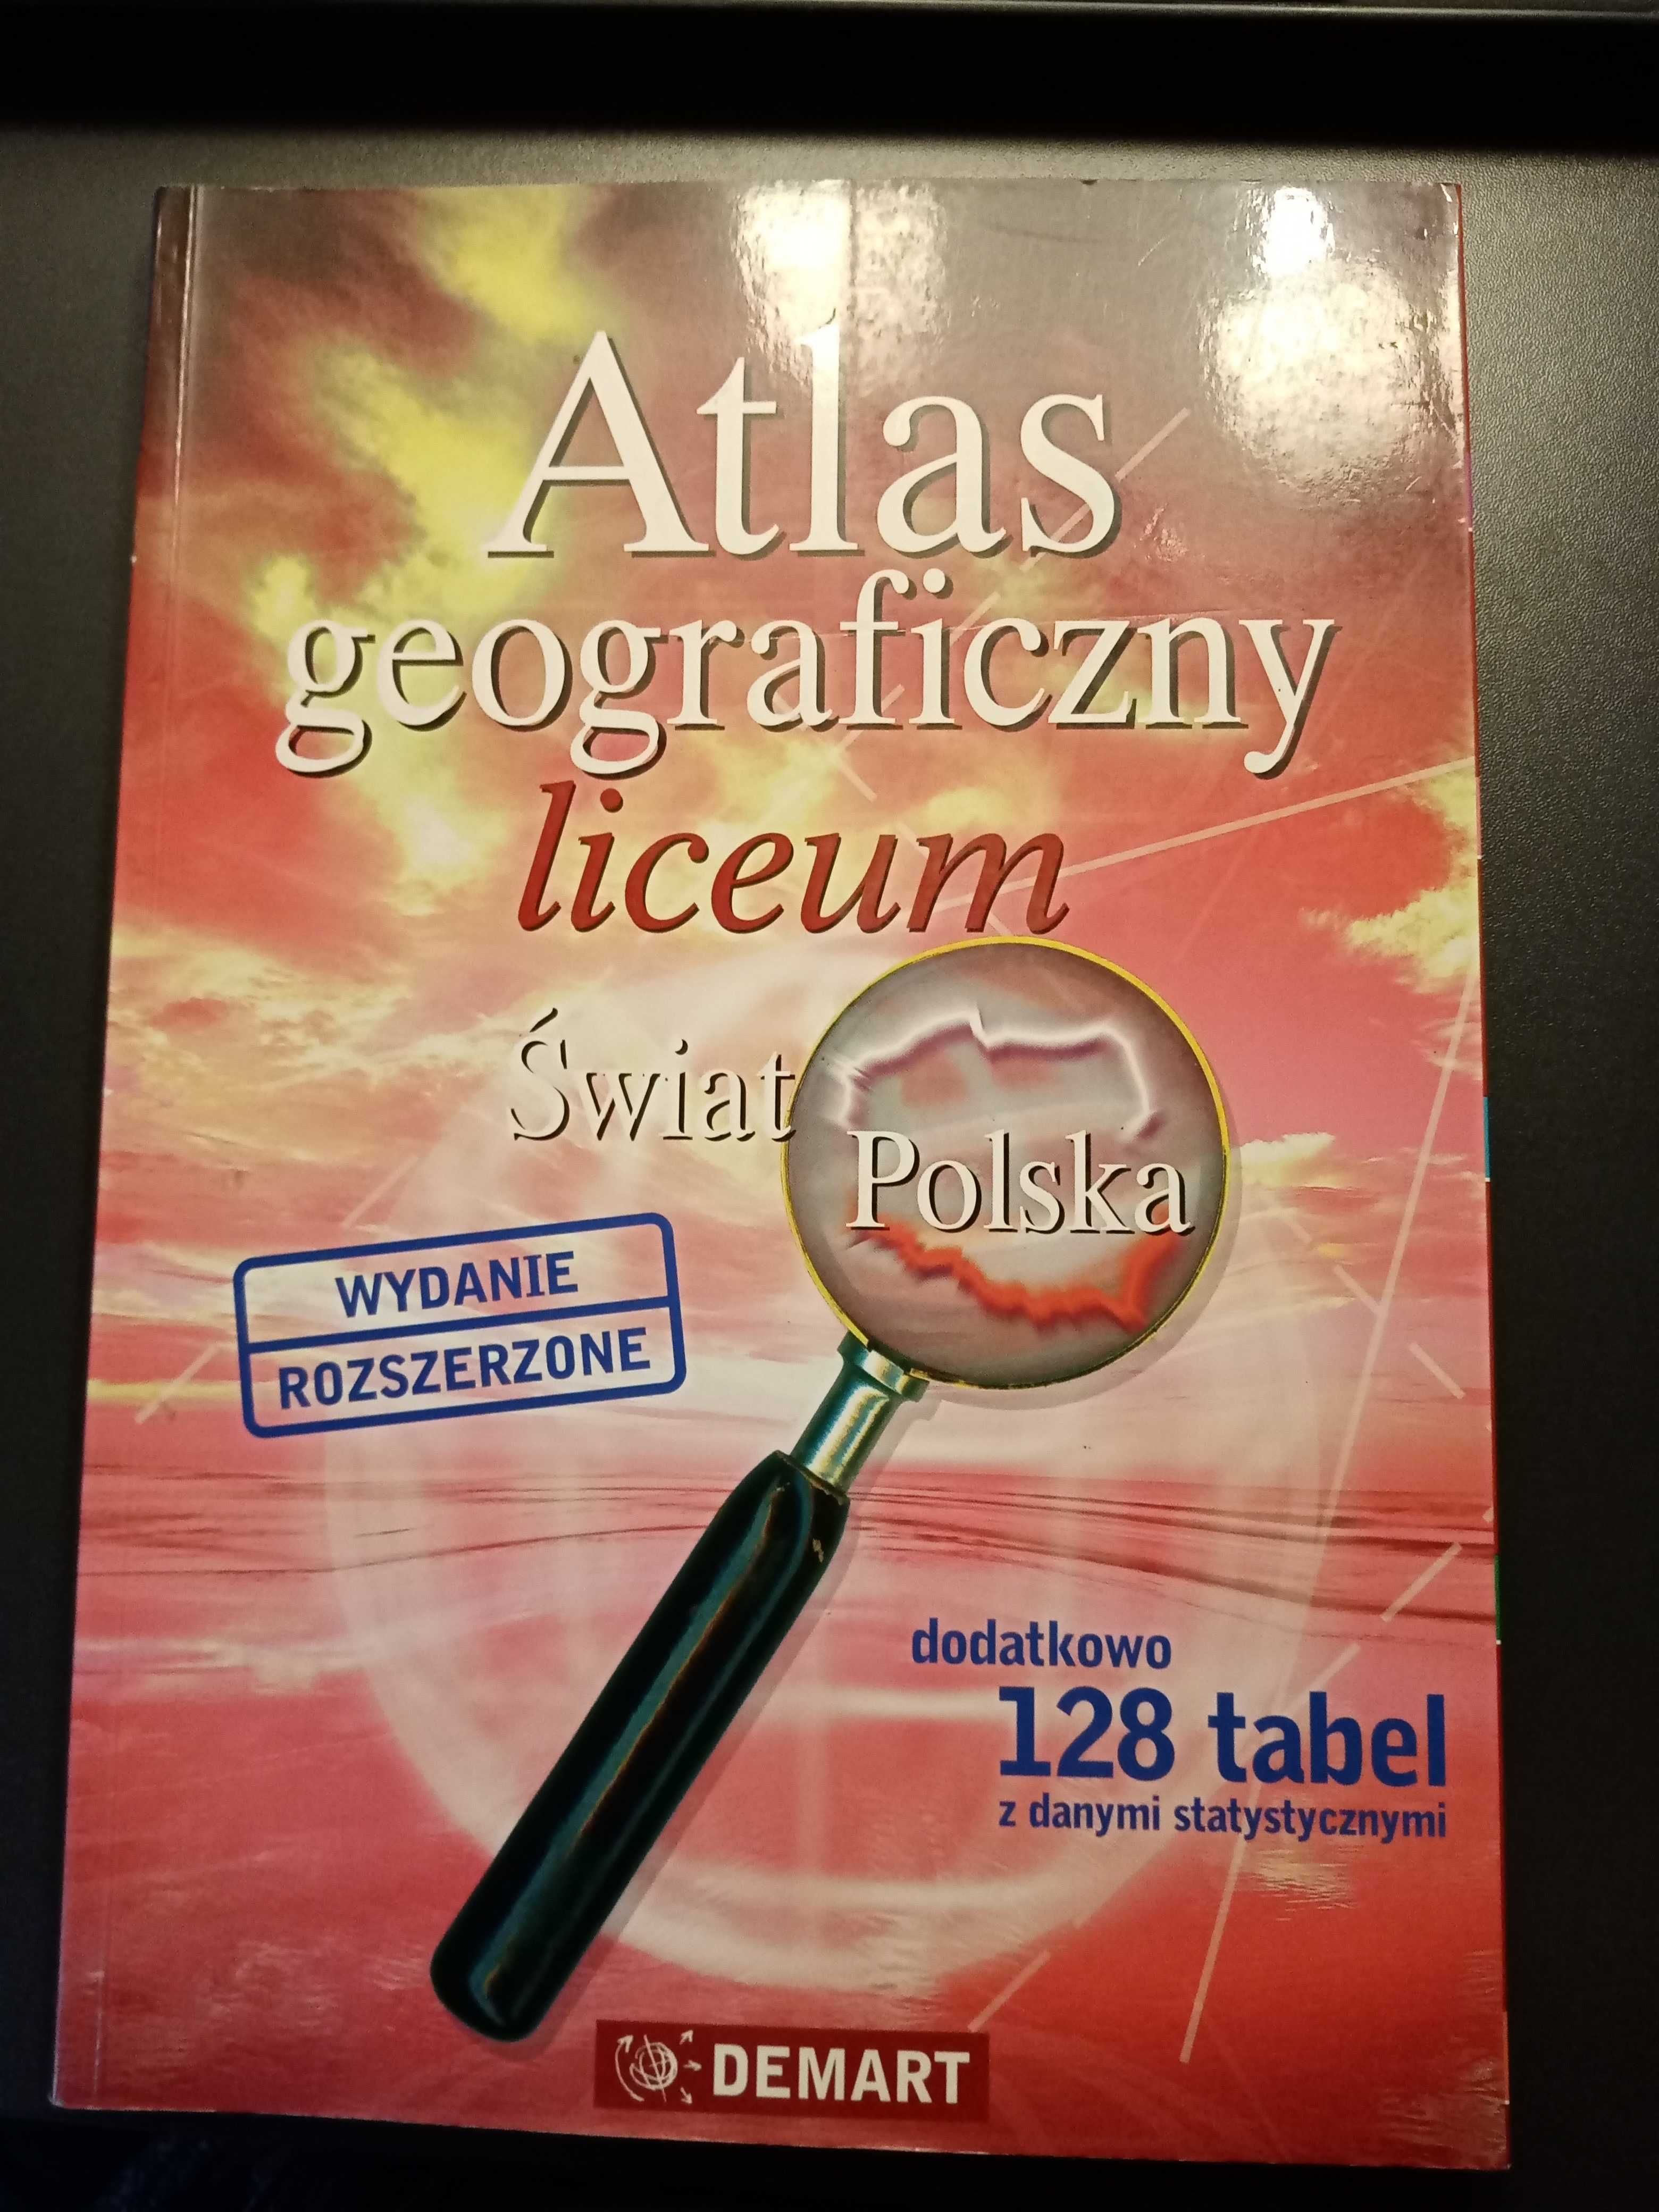 Atlas geograficzny liceum - świat Polska, wydanie rozszerzone